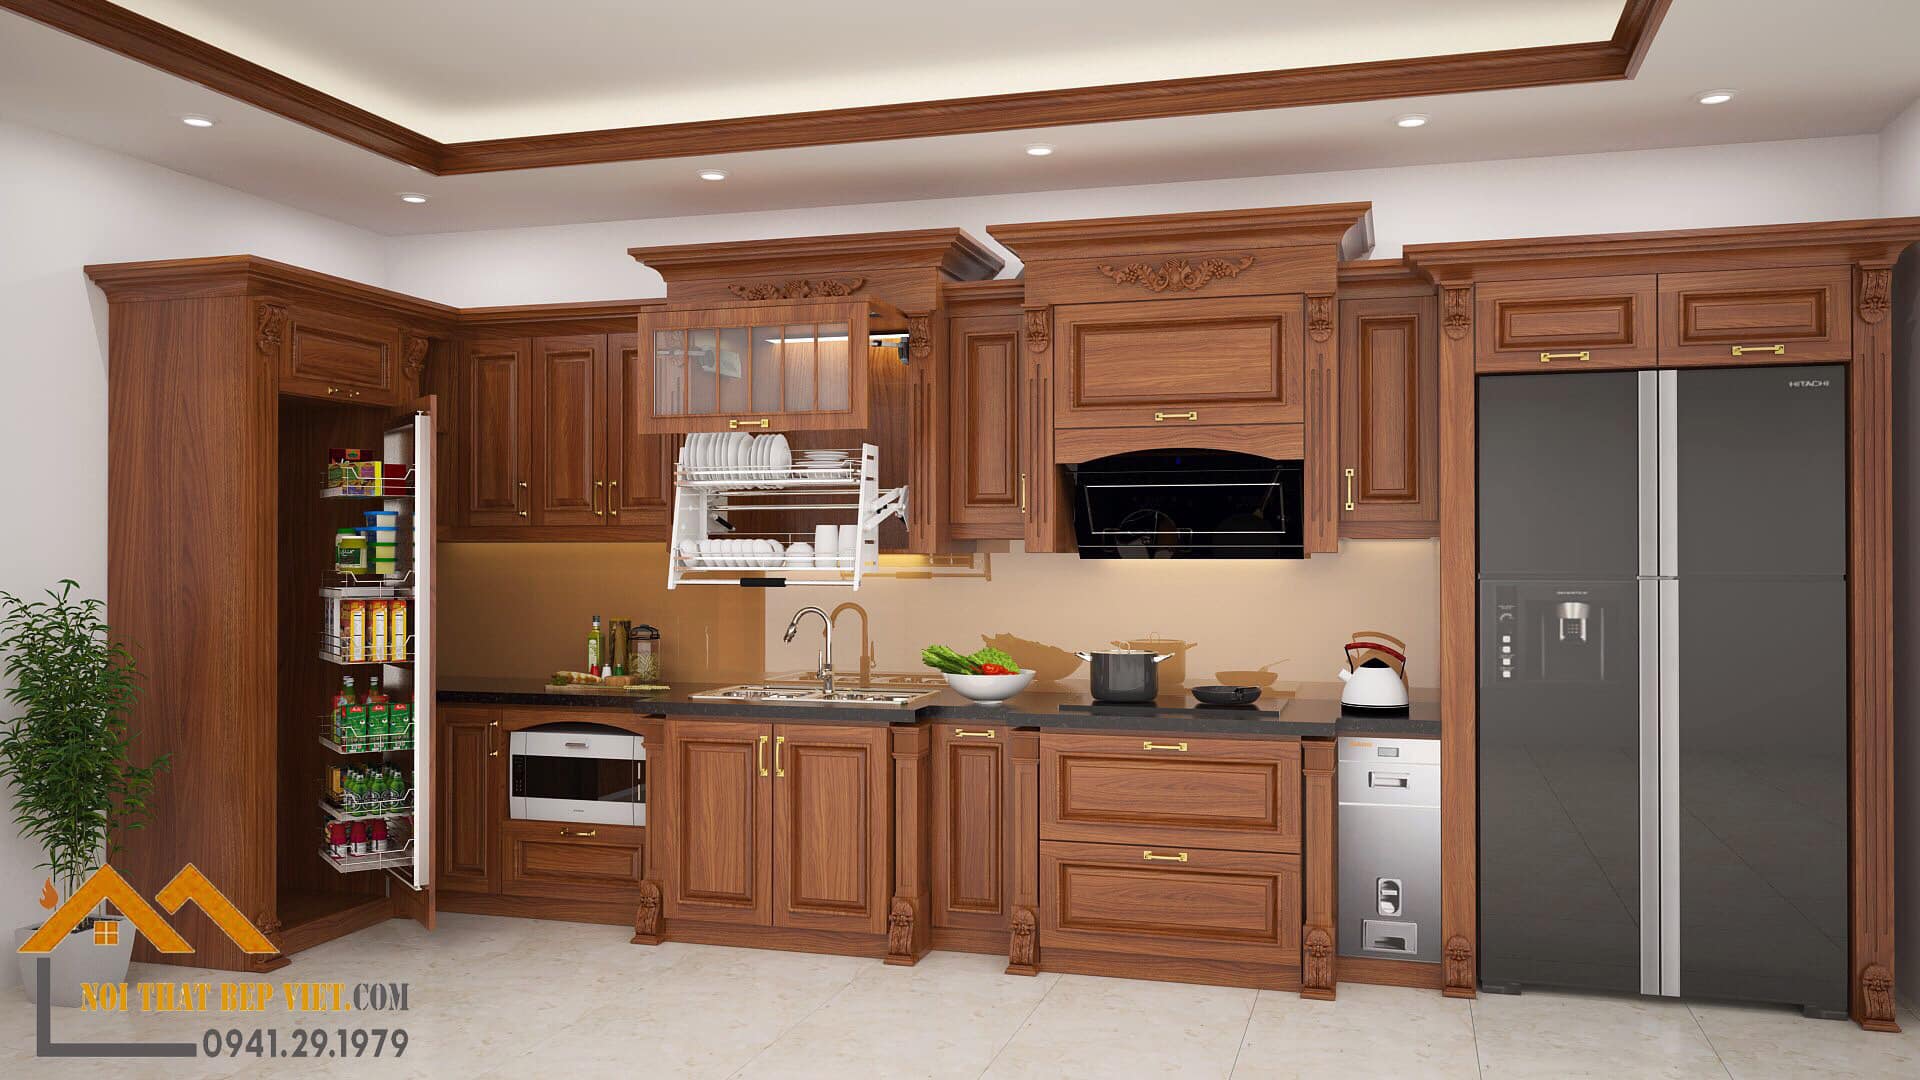 Sản phẩm được tạo nên từ gỗ gõ chất lượng cao và được thiết kế độc đáo, mang đến cho không gian nấu nướng nhà bạn một phong cách hoàn toàn mới. Hãy xem hình ảnh liên quan để khám phá thêm chi tiết về thiết kế độc đáo này.